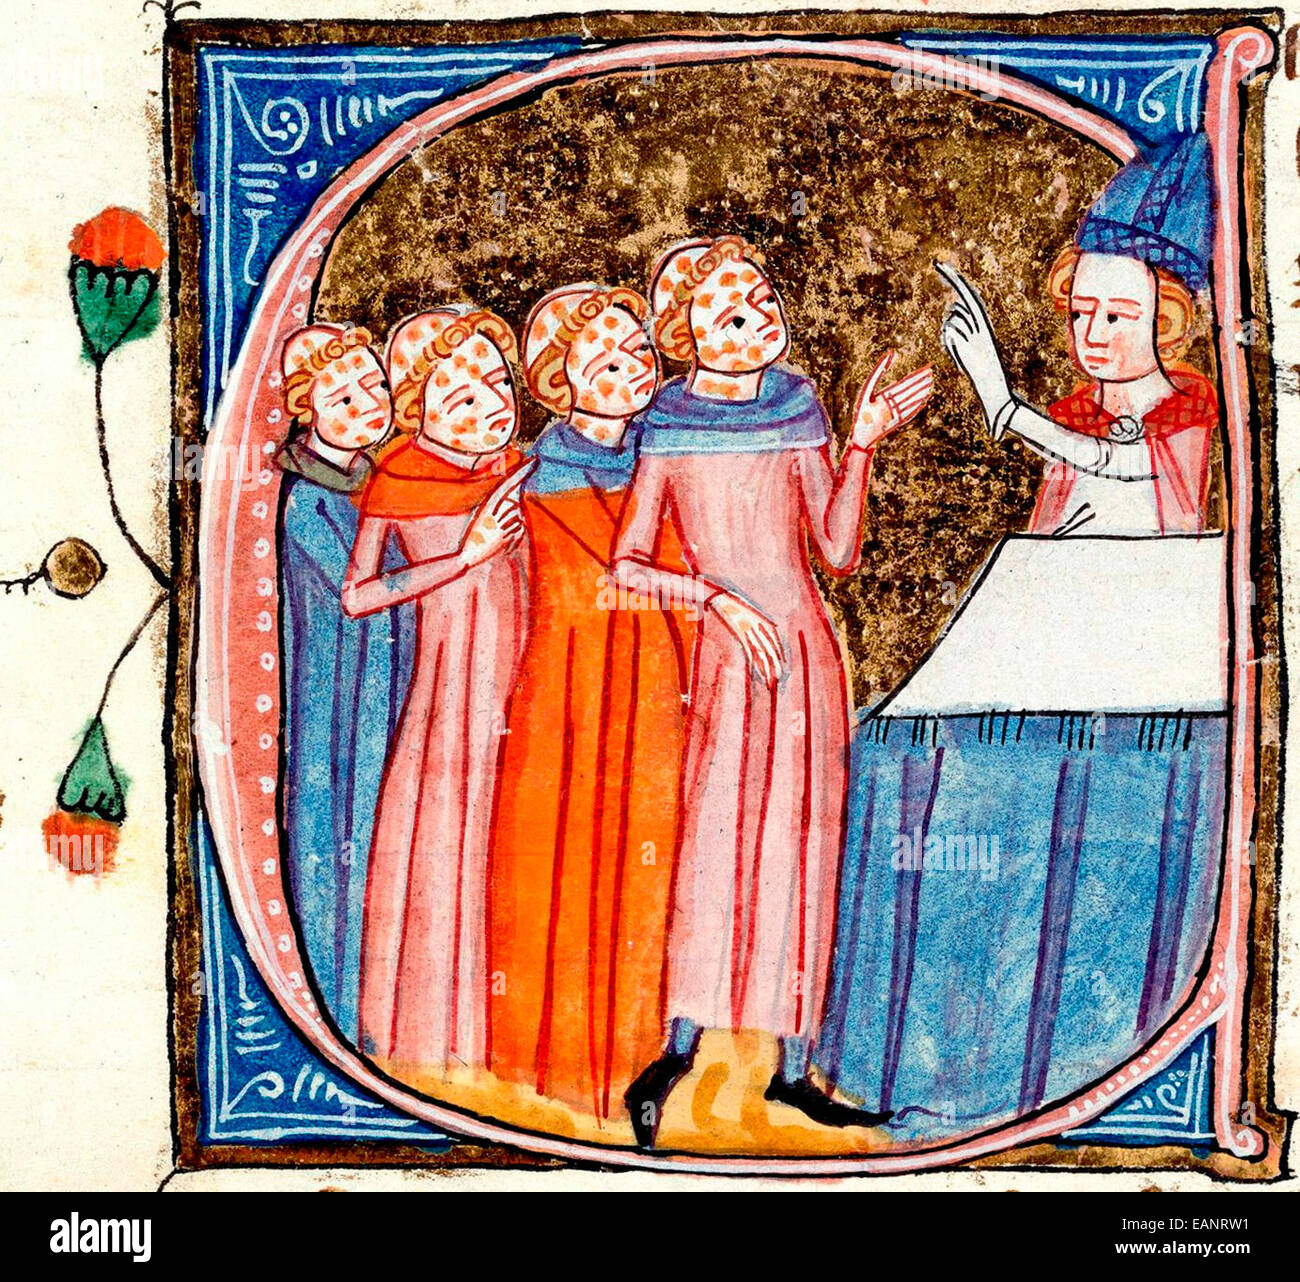 Pestkranken gesegnet, gezeigt mit Symptomen von einem späten 14. Jahrhundert Manuskript Omne Bonum von James le Palmer Stockfoto